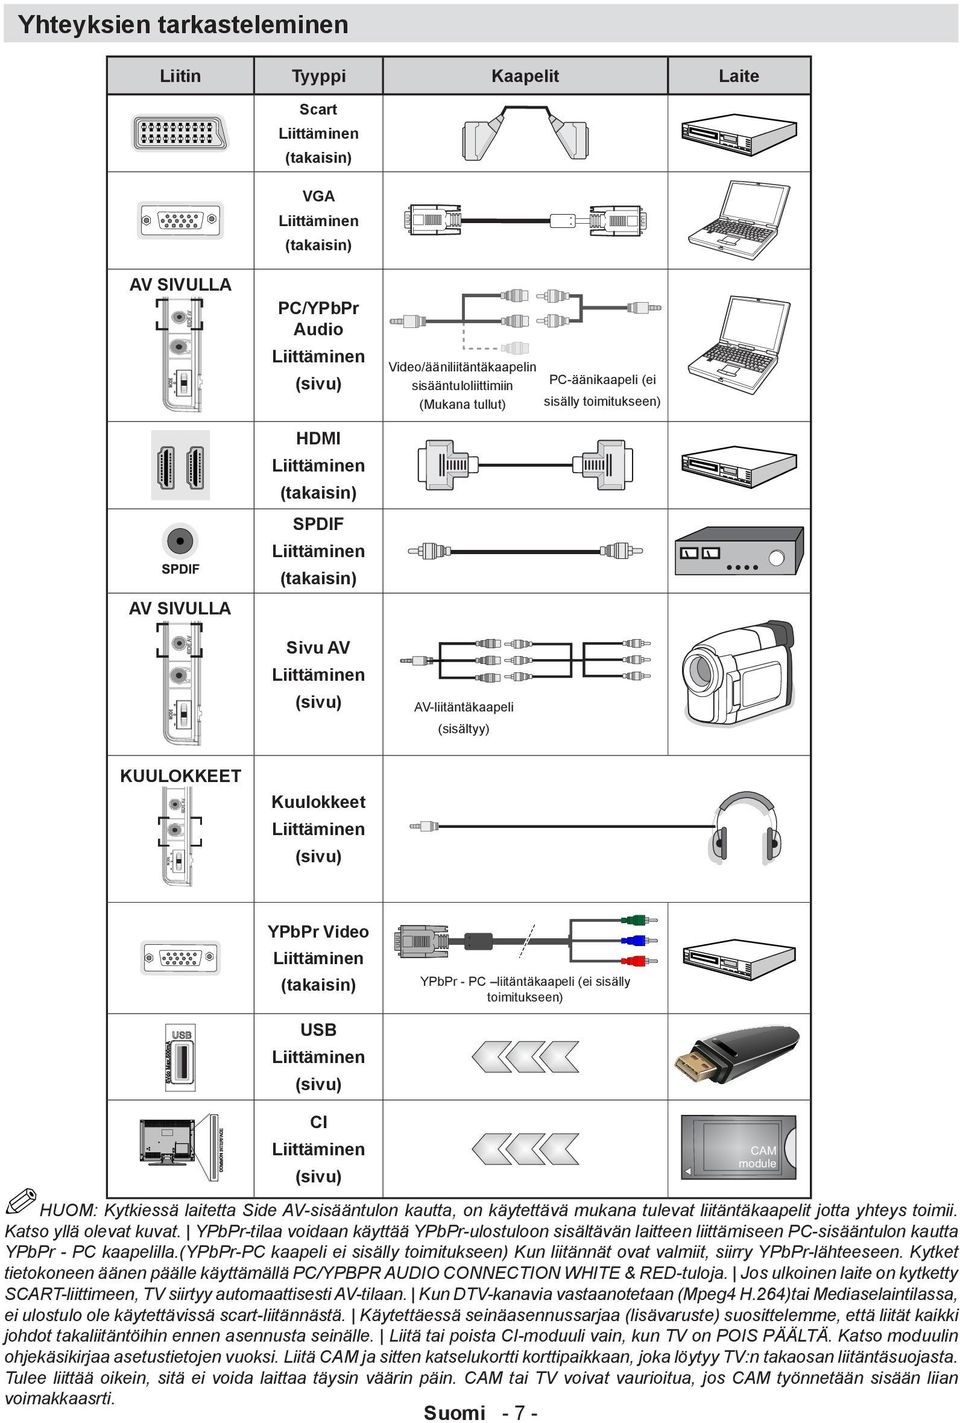 KUULOKKEET Kuulokkeet Liittäminen (sivu) YPbPr Video Liittäminen (takaisin) USB Liittäminen (sivu) YPbPr - PC liitäntäkaapeli (ei sisälly toimitukseen) CI Liittäminen (sivu) HUOM: Kytkiessä laitetta